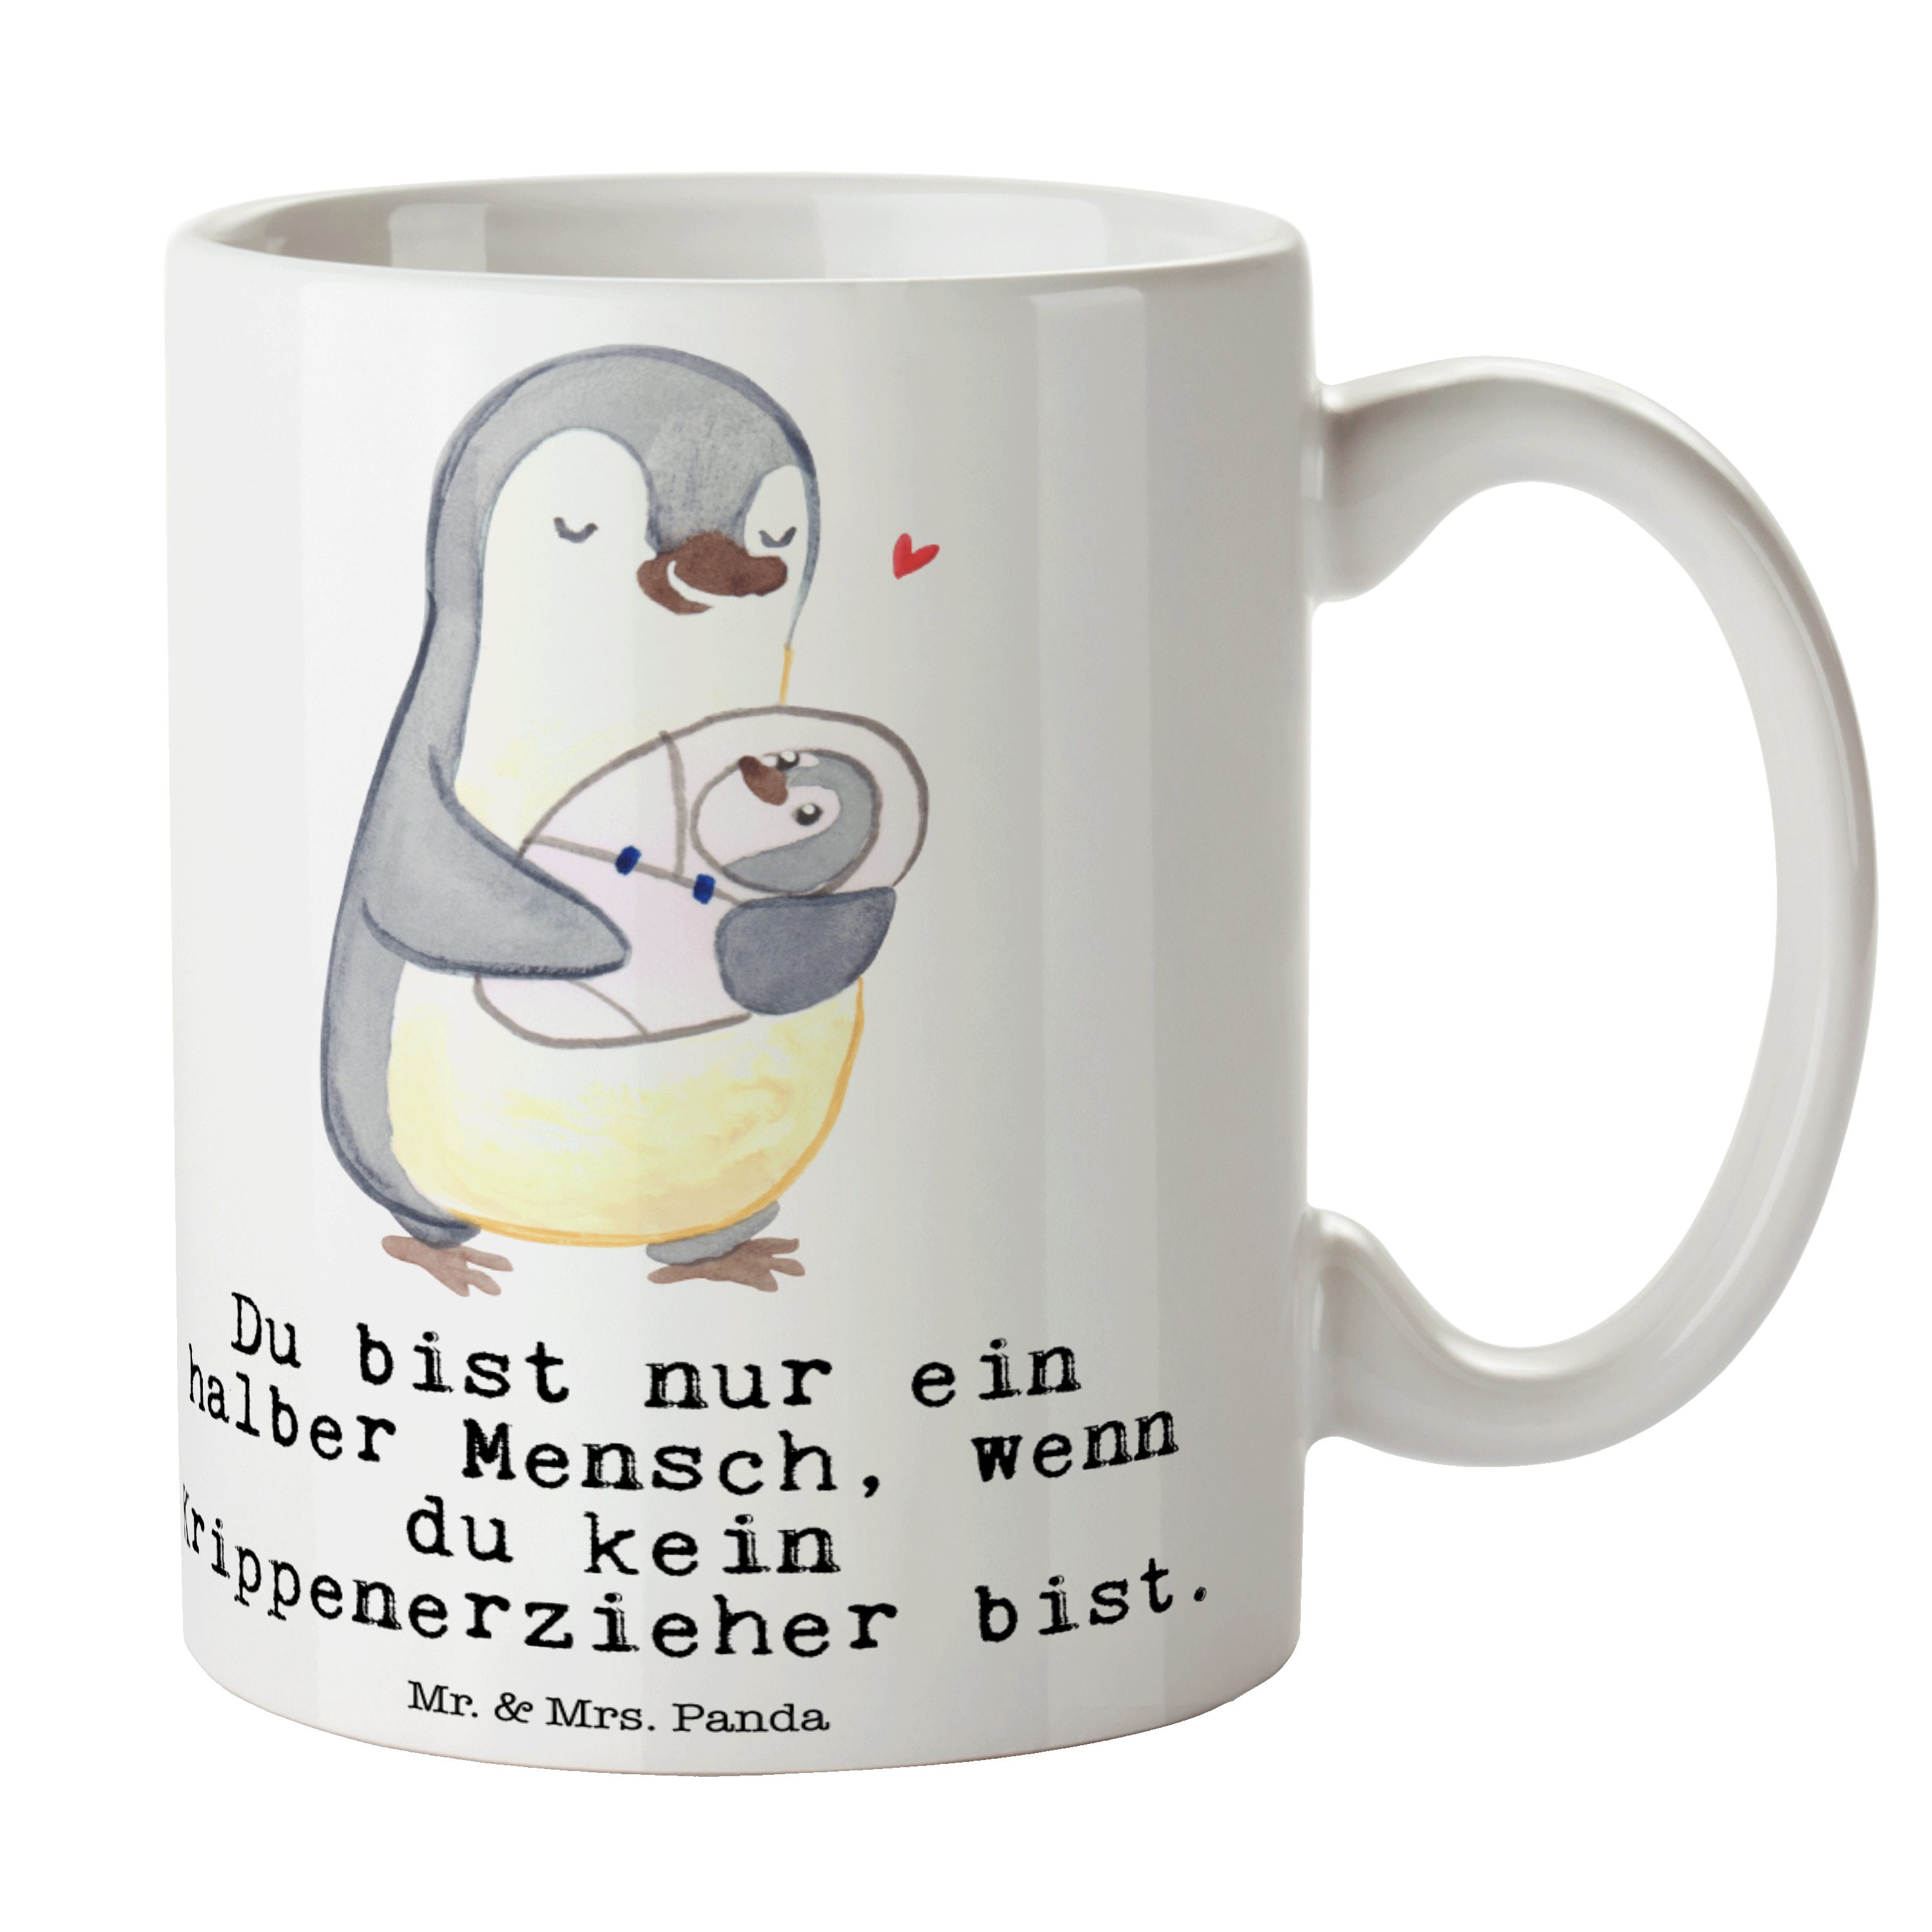 Mr. & Mrs. Panda Tasse Krippenerzieher mit Herz - Weiß - Geschenk, Geschenk Tasse, Dankeschö, Keramik